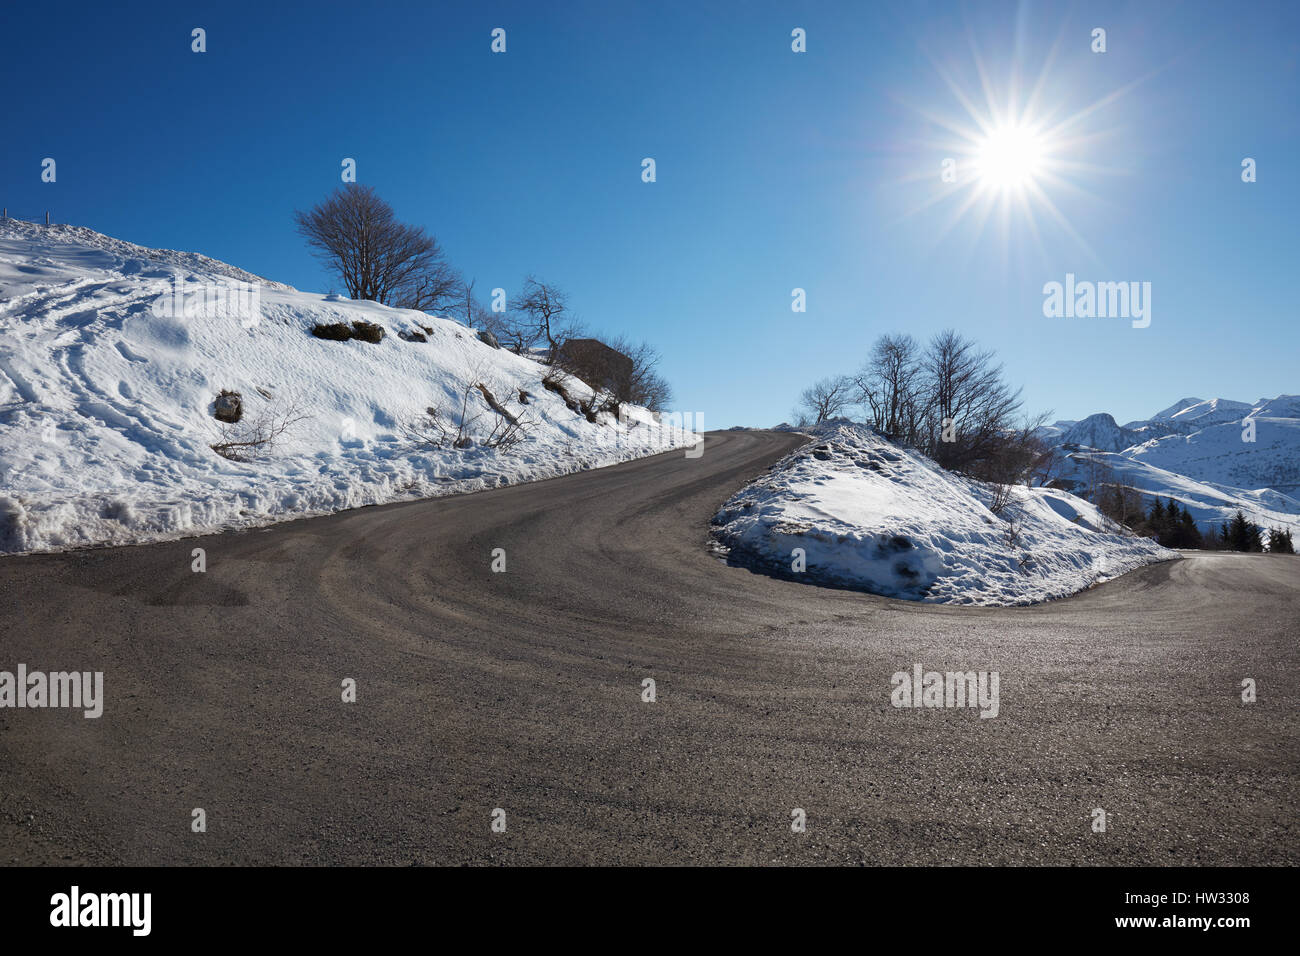 Route de montagne vide courbe sur Alpes avec neige sur côtés, ciel bleu dans une journée ensoleillée Banque D'Images